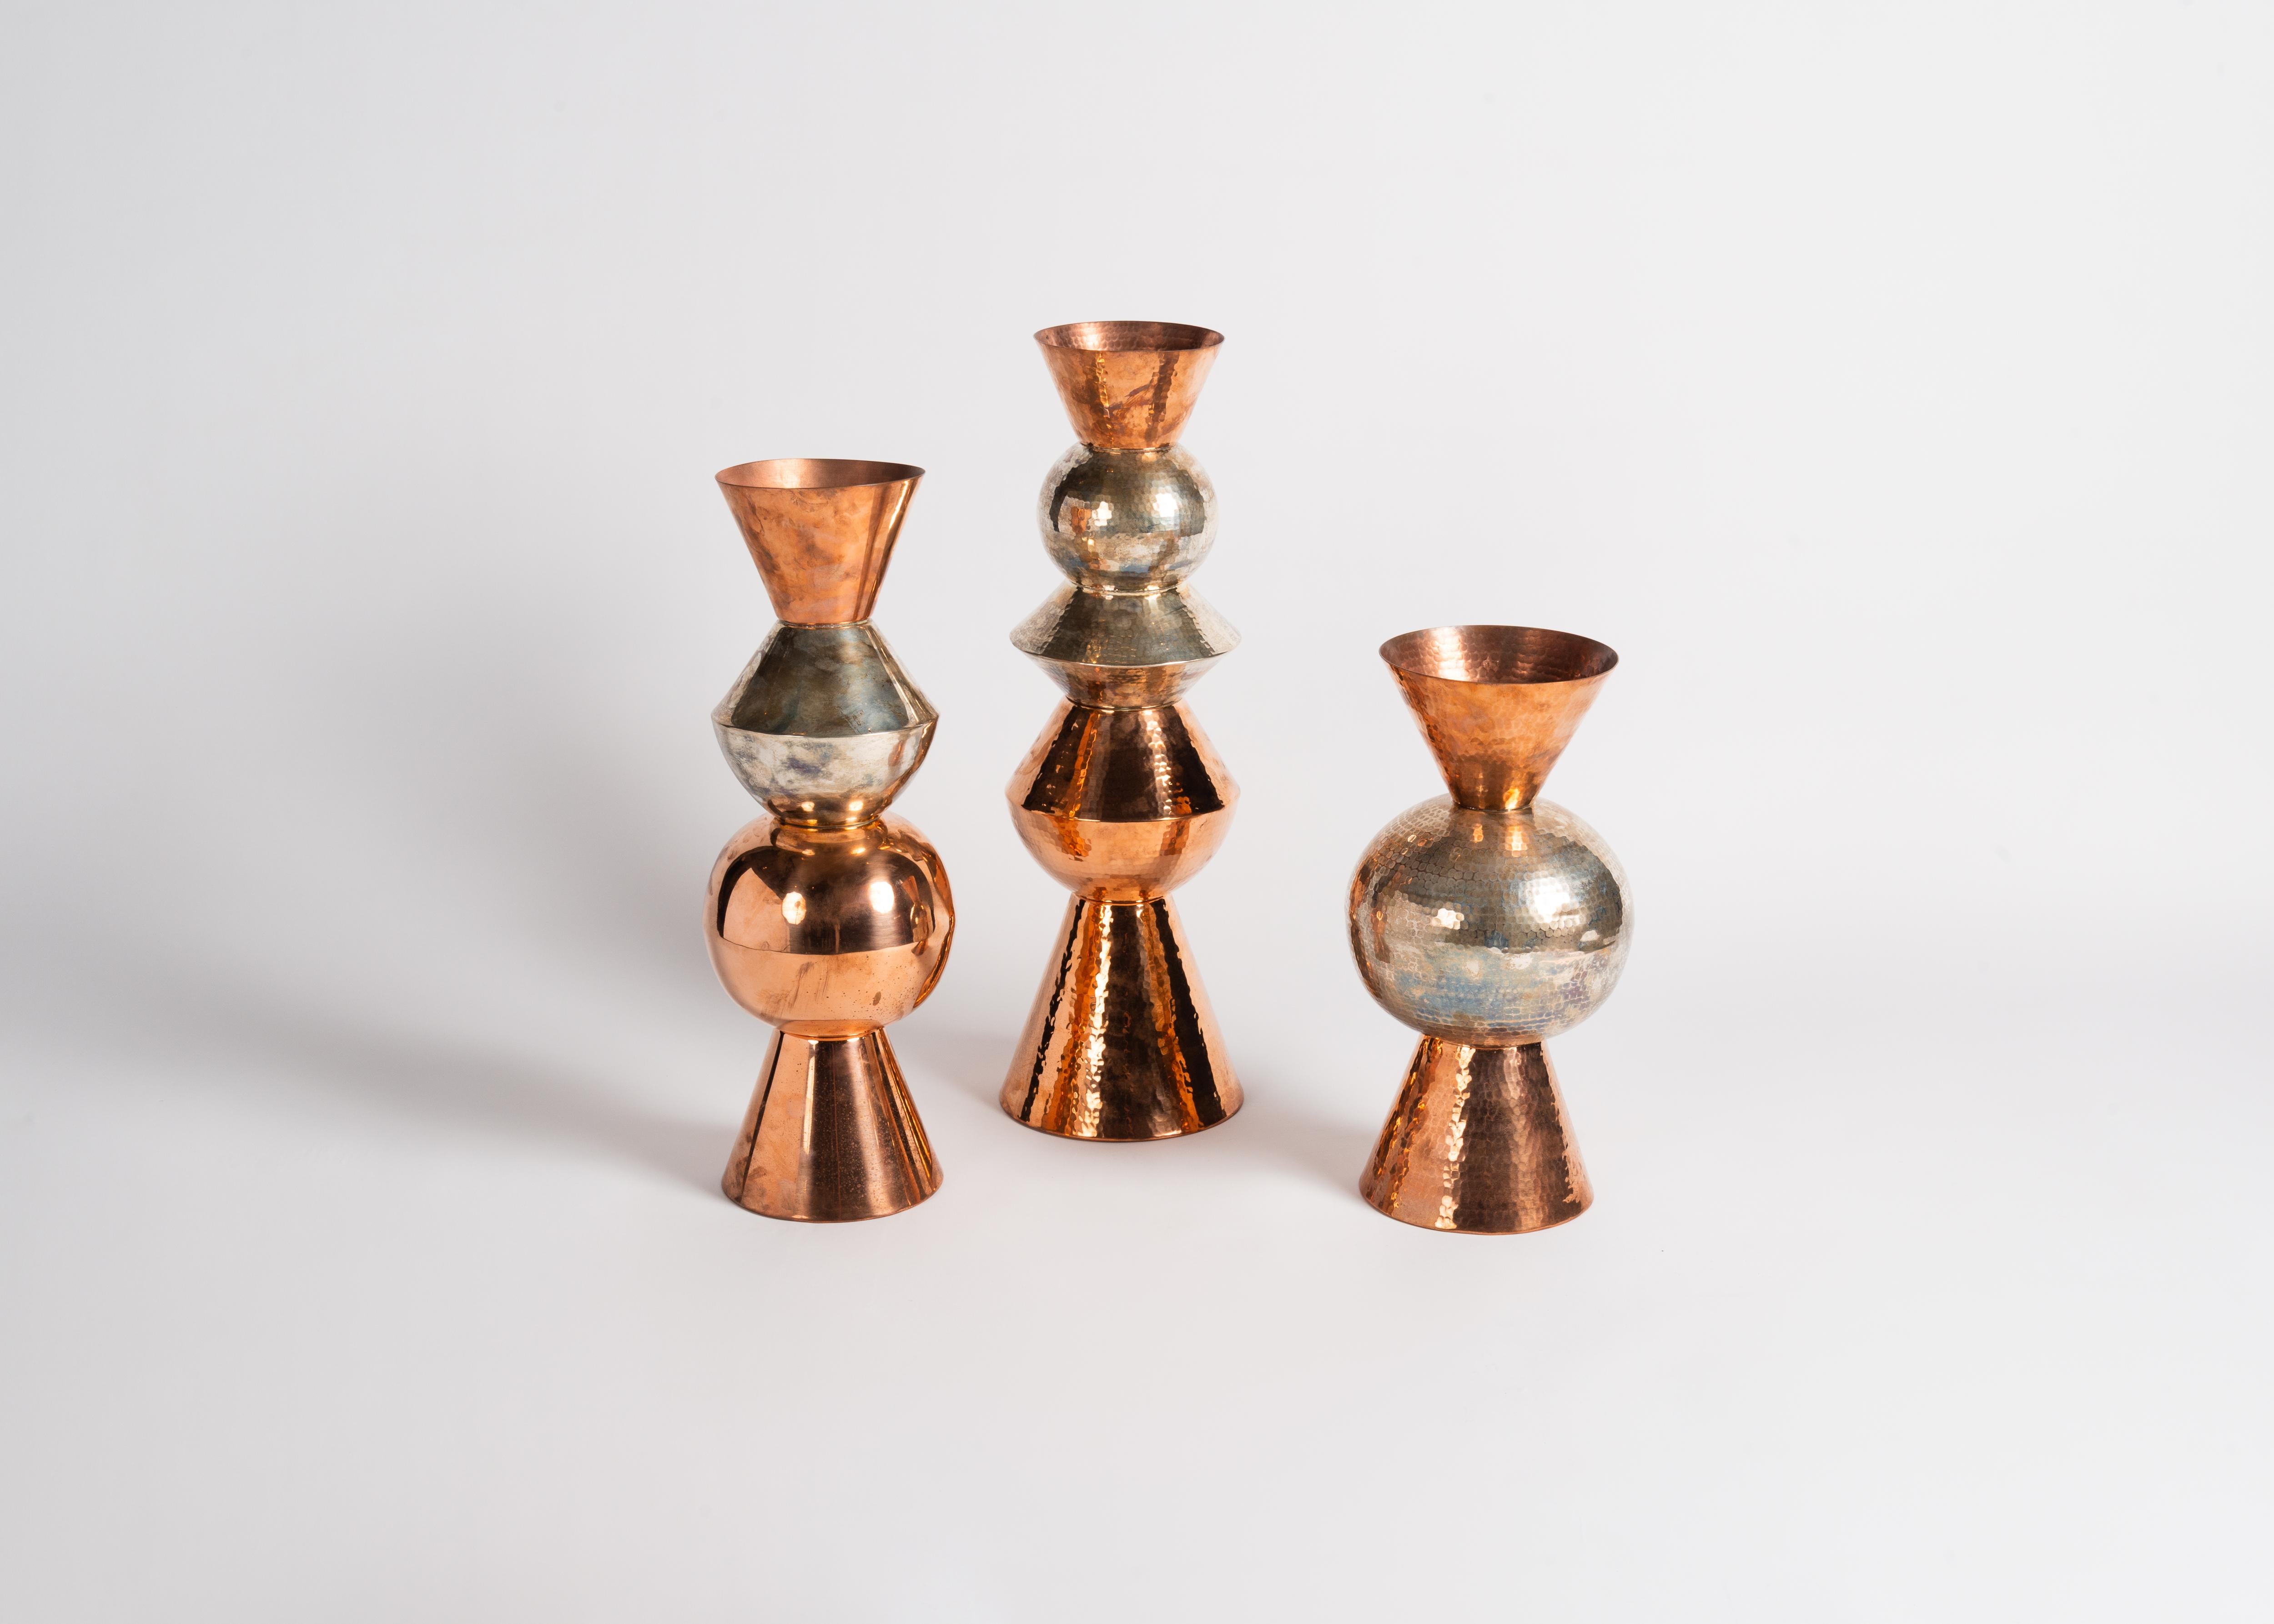 Ce vase fait partie d'une série de magnifiques vases lobés créés par la designer américaine Laura Kirar en collaboration avec des artisans de cinquième génération de Michoacan, au Mexique. Pour créer ces pièces remarquables, le cuivre brut est